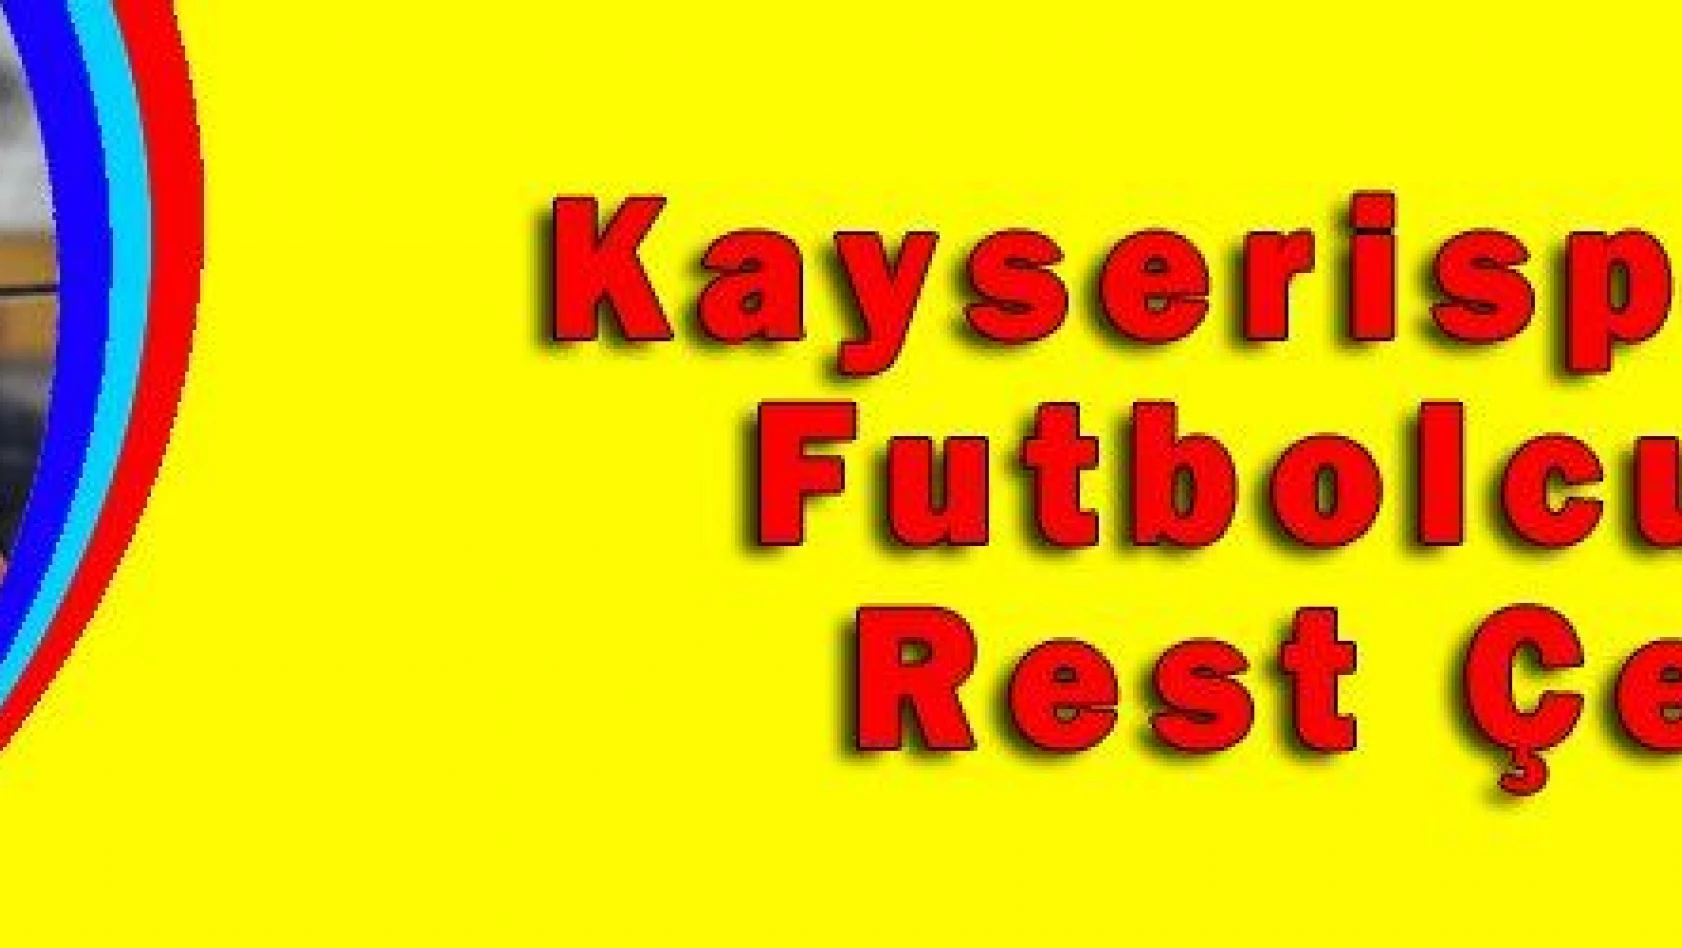 Kayserispor'da Futbolcular Rest Çekti